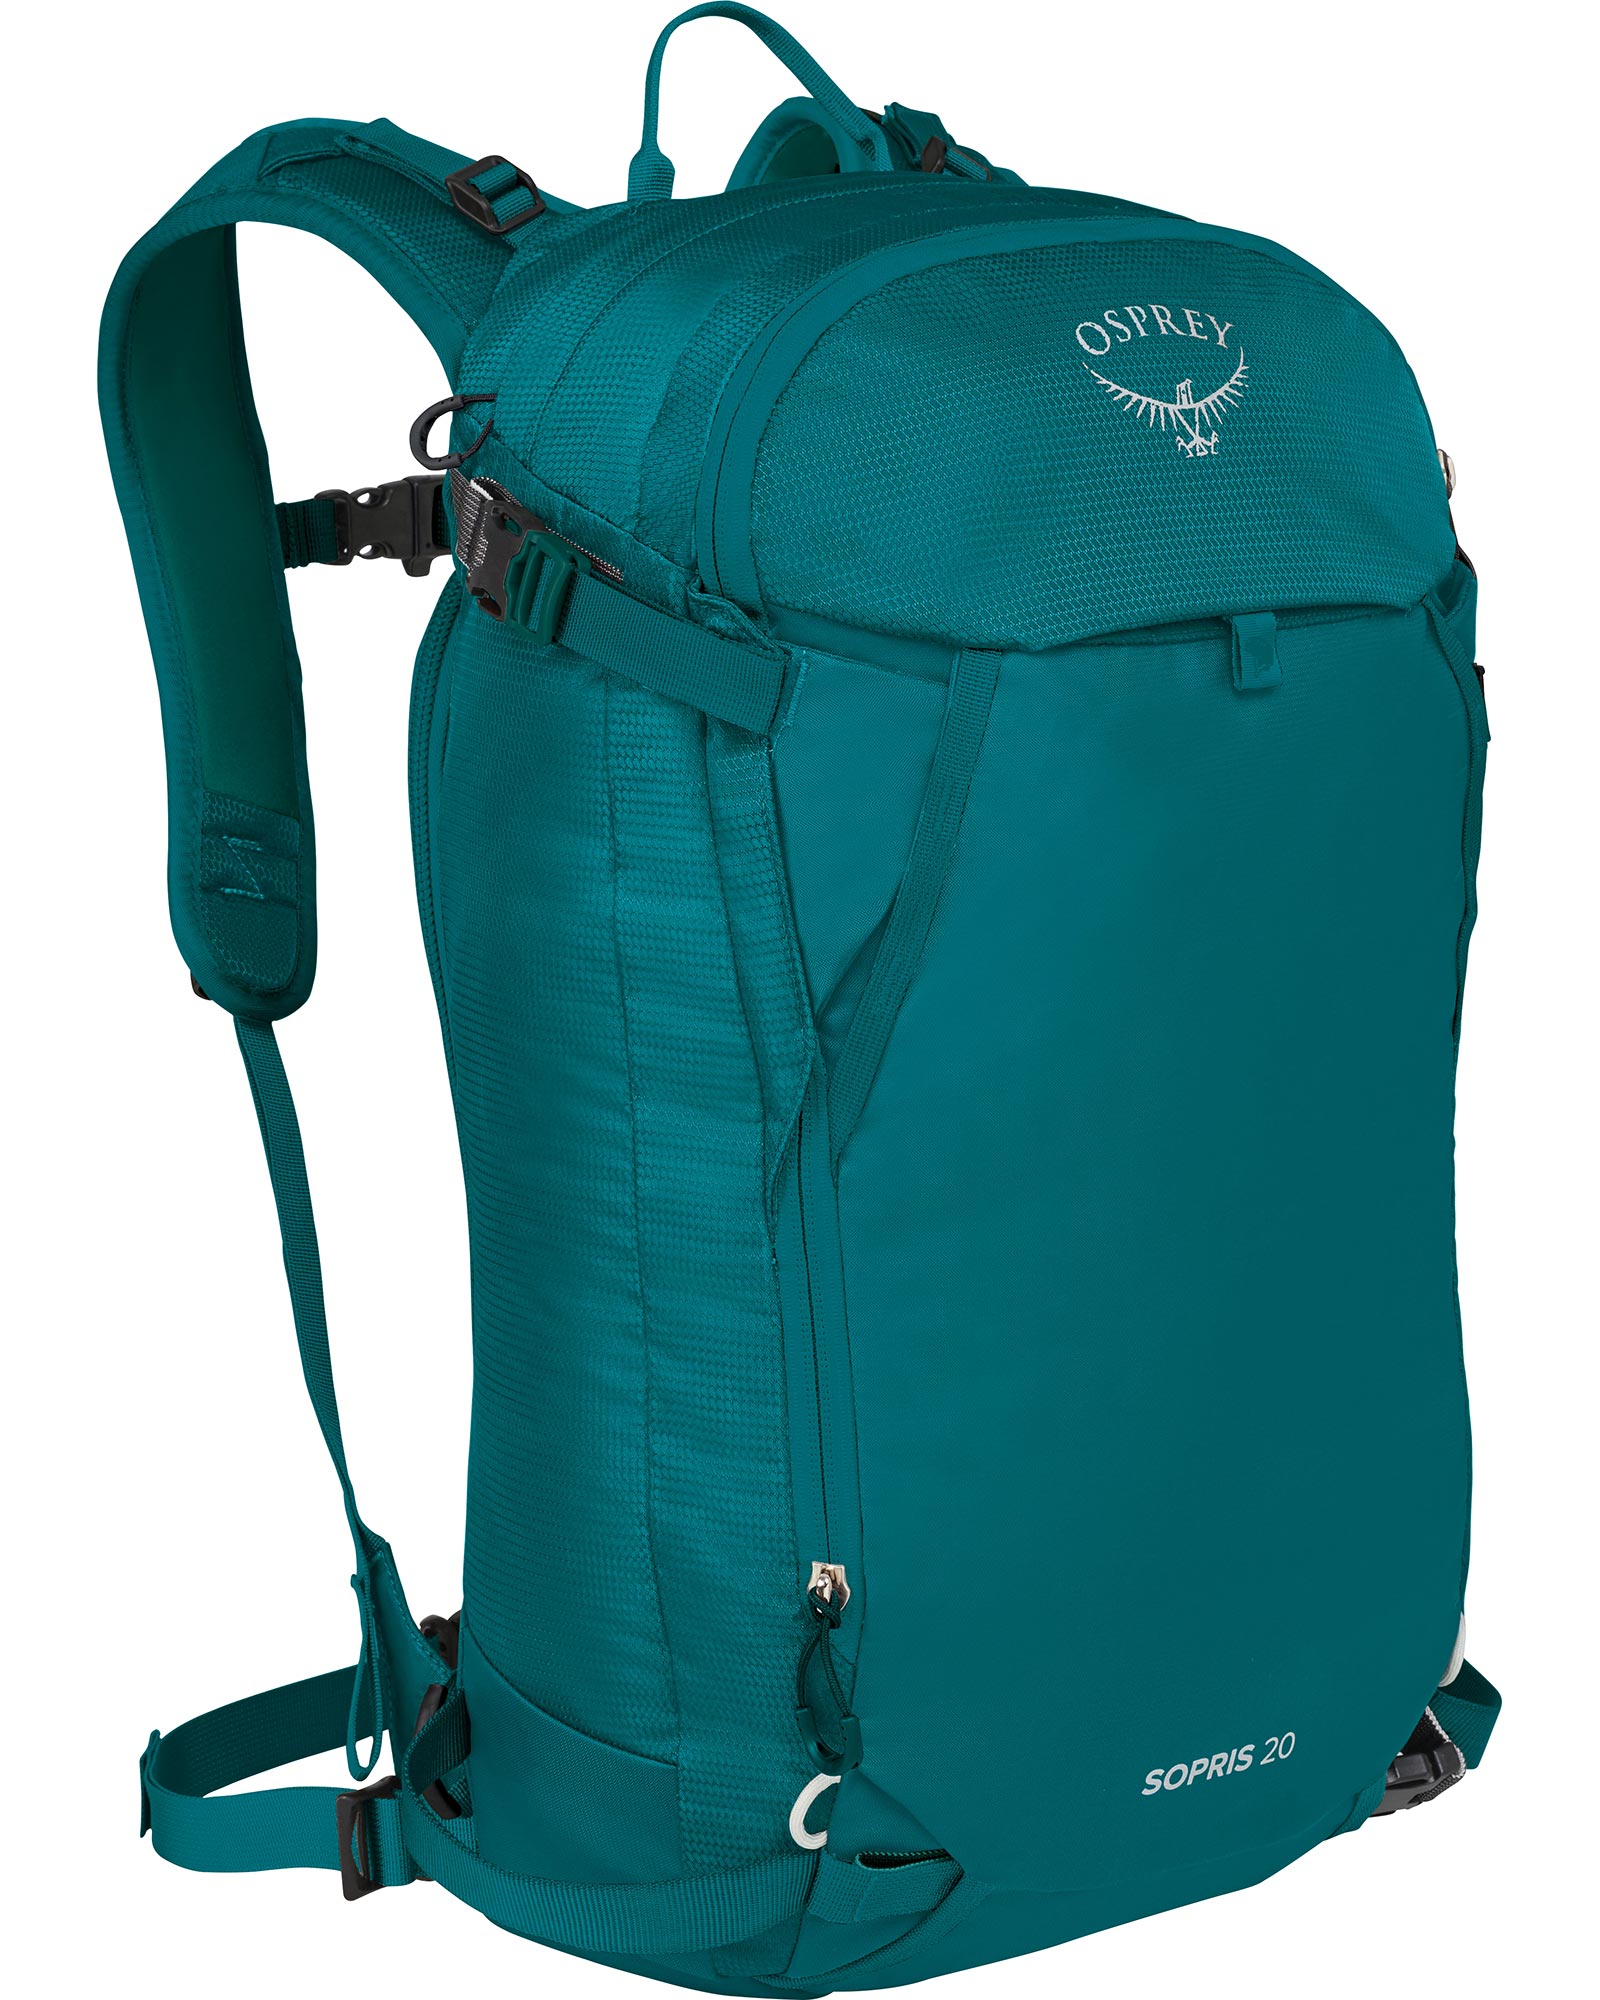 Osprey Sopris 20 Women’s Backpack - Verdigris Green